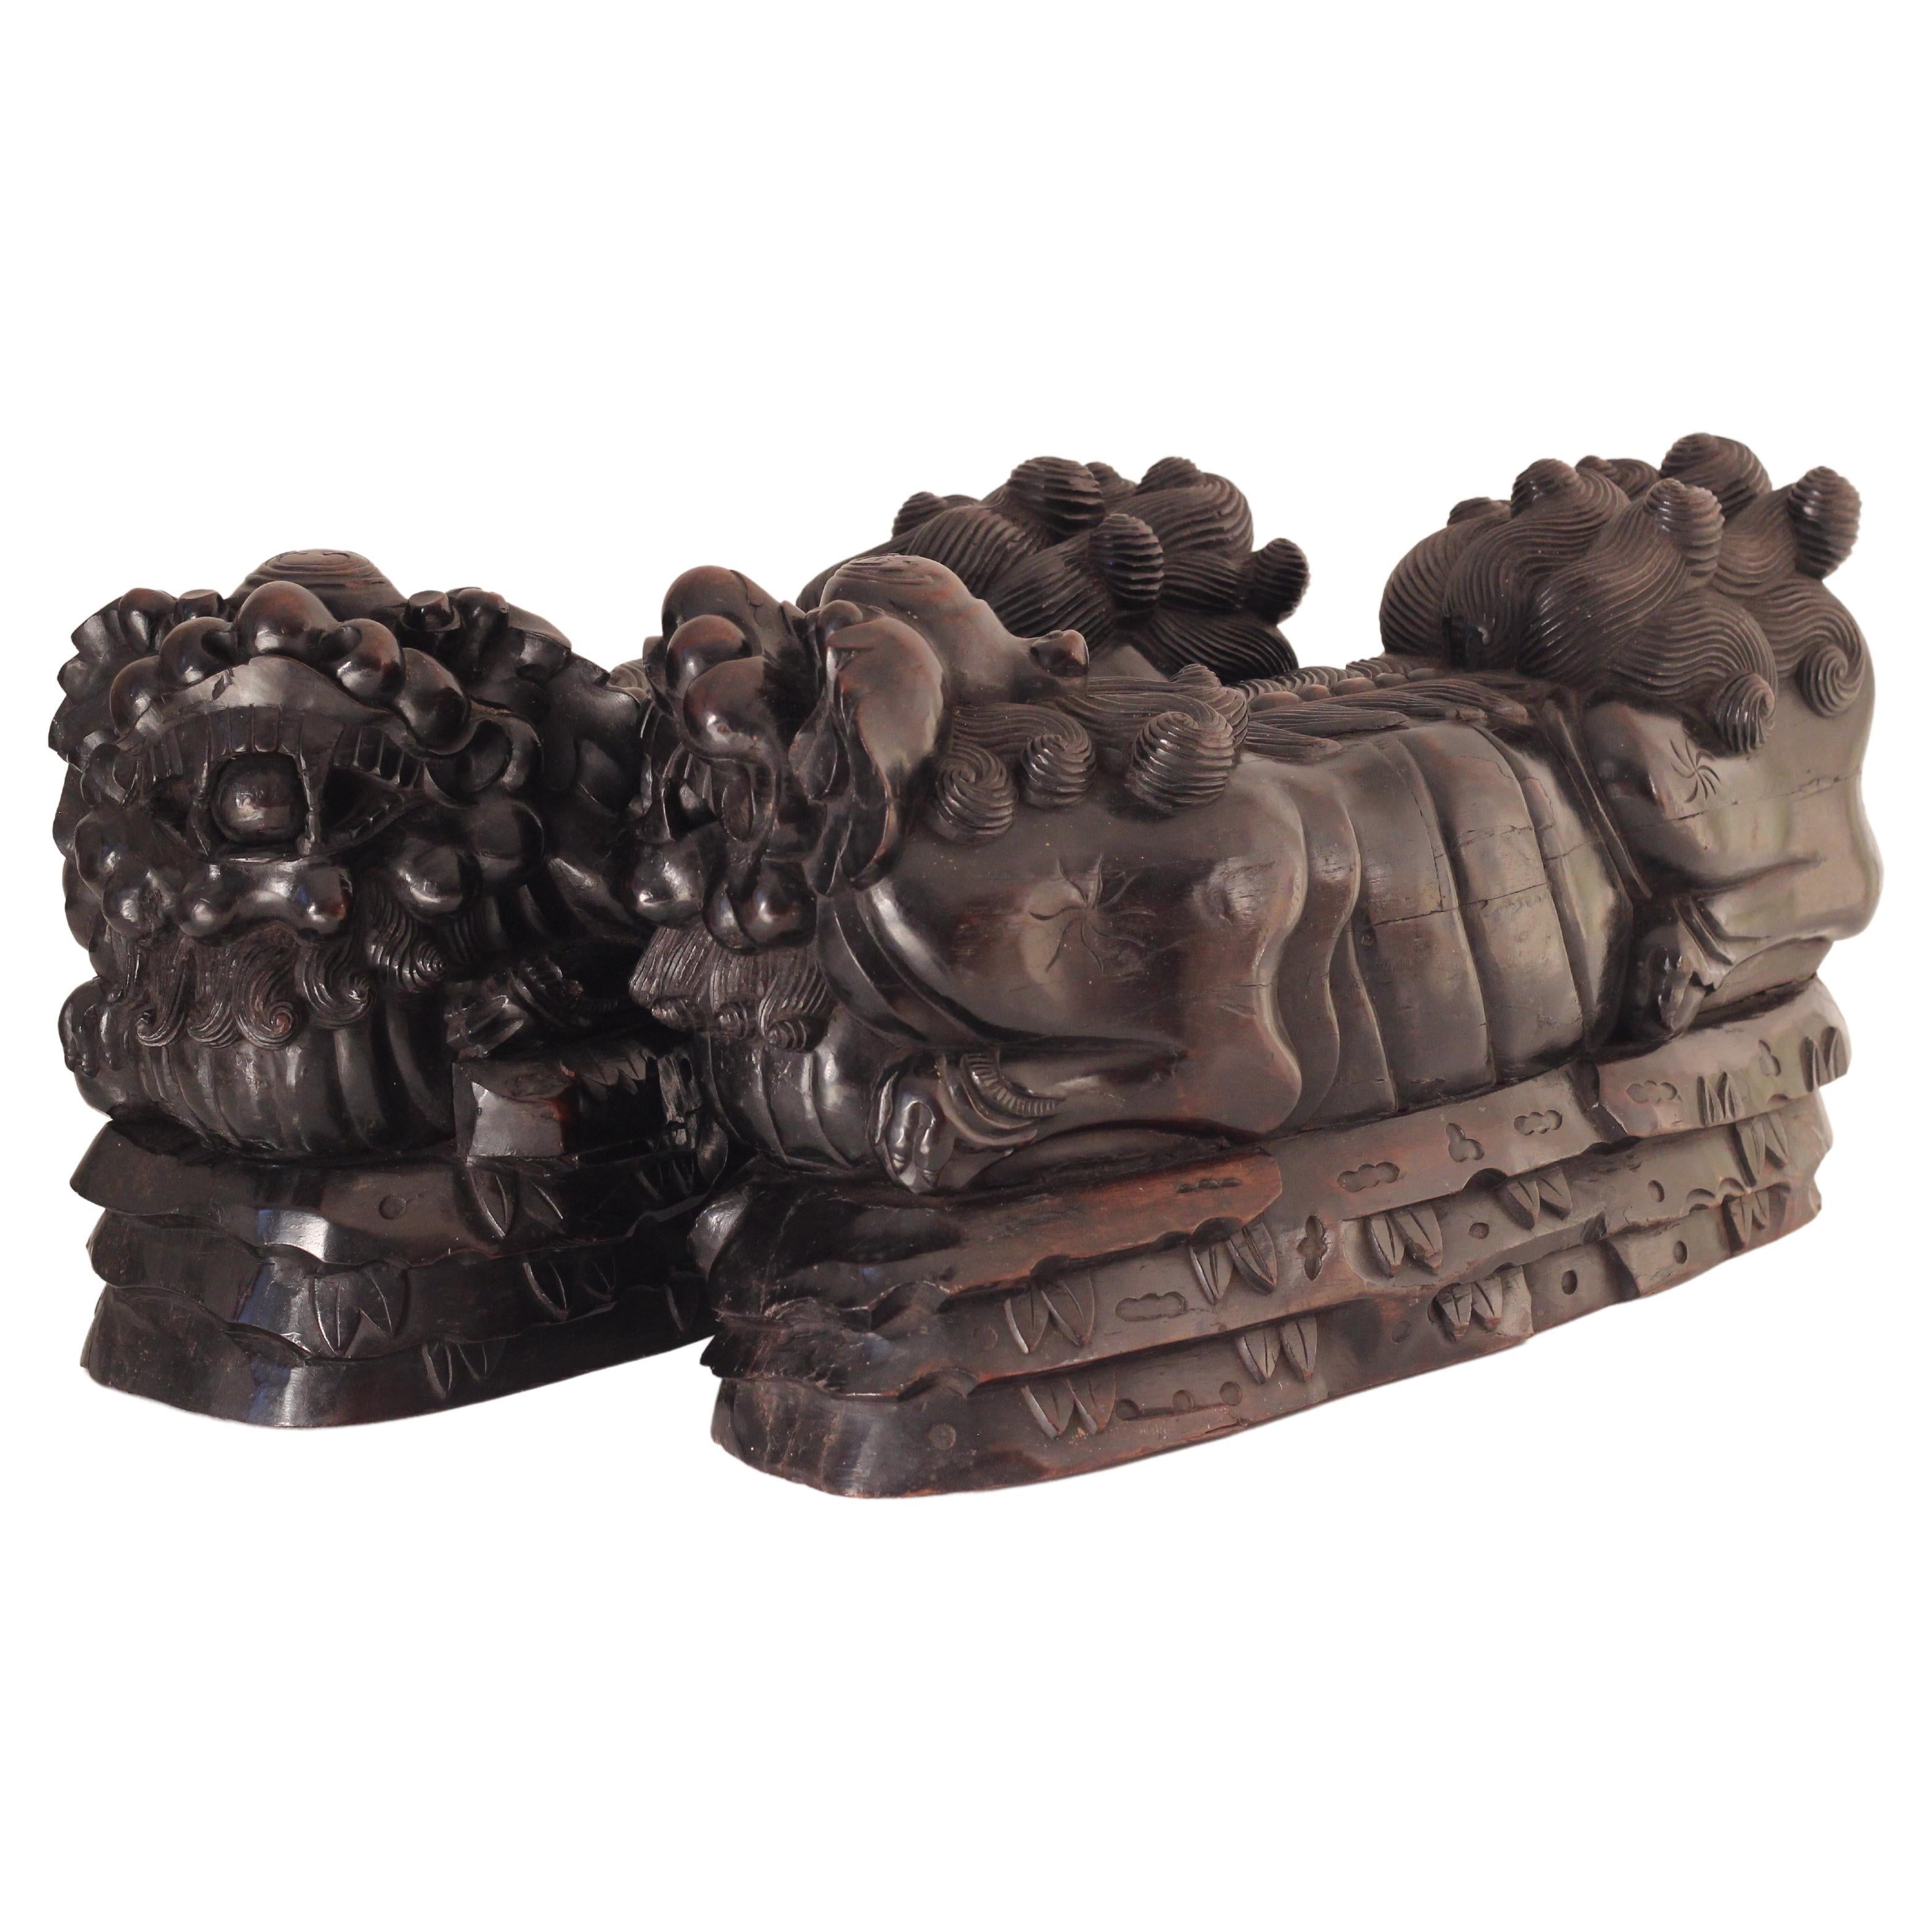 Paar geschnitzte Foo- Tempelhunde oder chinesische Wächter Löwen aus dem 19. Jahrhundert